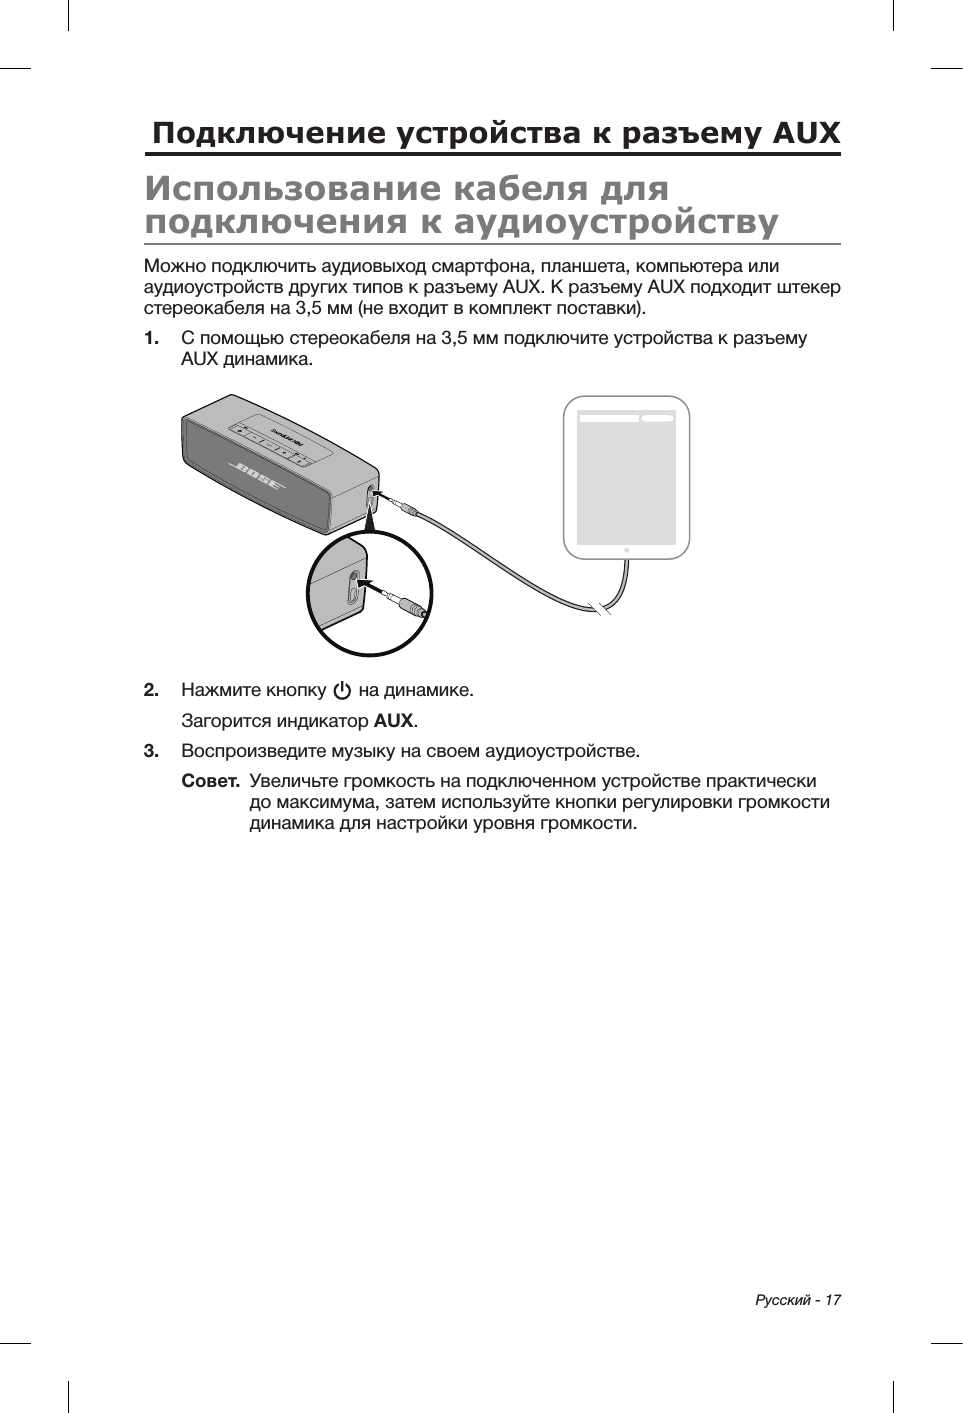  Русский - 17Подключение устройства к разъему AUXИспользование кабеля для подключения к аудиоустройствуМожно подключить аудиовыход смартфона, планшета, компьютера или аудиоустройств других типов к разъему AUX. К разъему AUX подходит штекер стереокабеля на 3,5 мм (не входит в комплект поставки).1.  С помощью стереокабеля на 3,5 мм подключите устройства к разъему AUX динамика.2.  Нажмите кнопку   на динамике.Загорится индикатор AUX.3.  Воспроизведите музыку на своем аудиоустройстве.Совет.   Увеличьте громкость на подключенном устройстве практически до максимума, затем используйте кнопки регулировки громкости динамика для настройки уровня громкости.